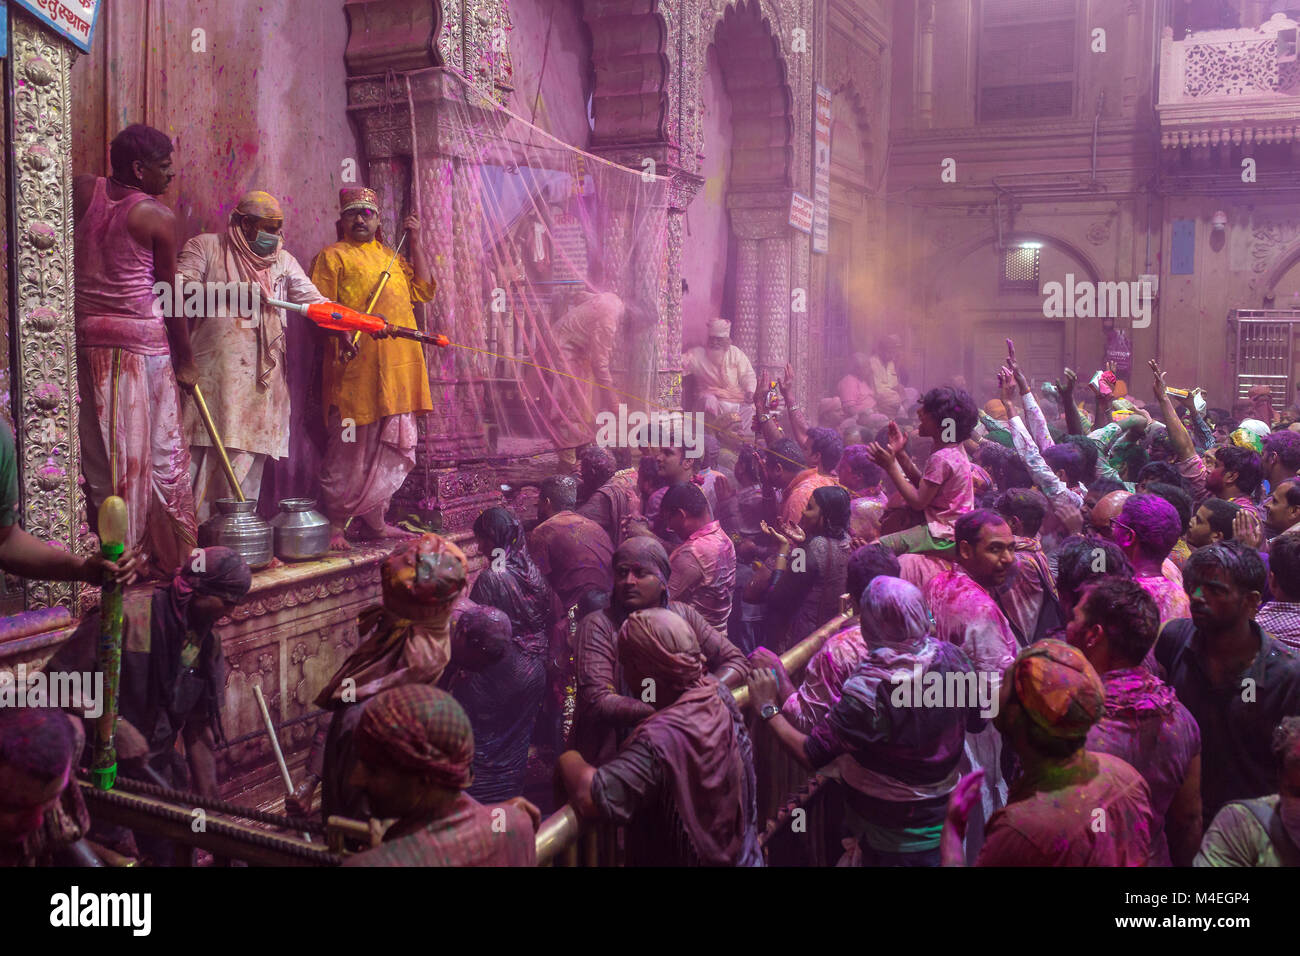 Vrindavan, India - March 20, 2016: Holi celebration in the Hindu Banke Bihare temple in Vrindavan, Uttar Pradesh, India. Stock Photo